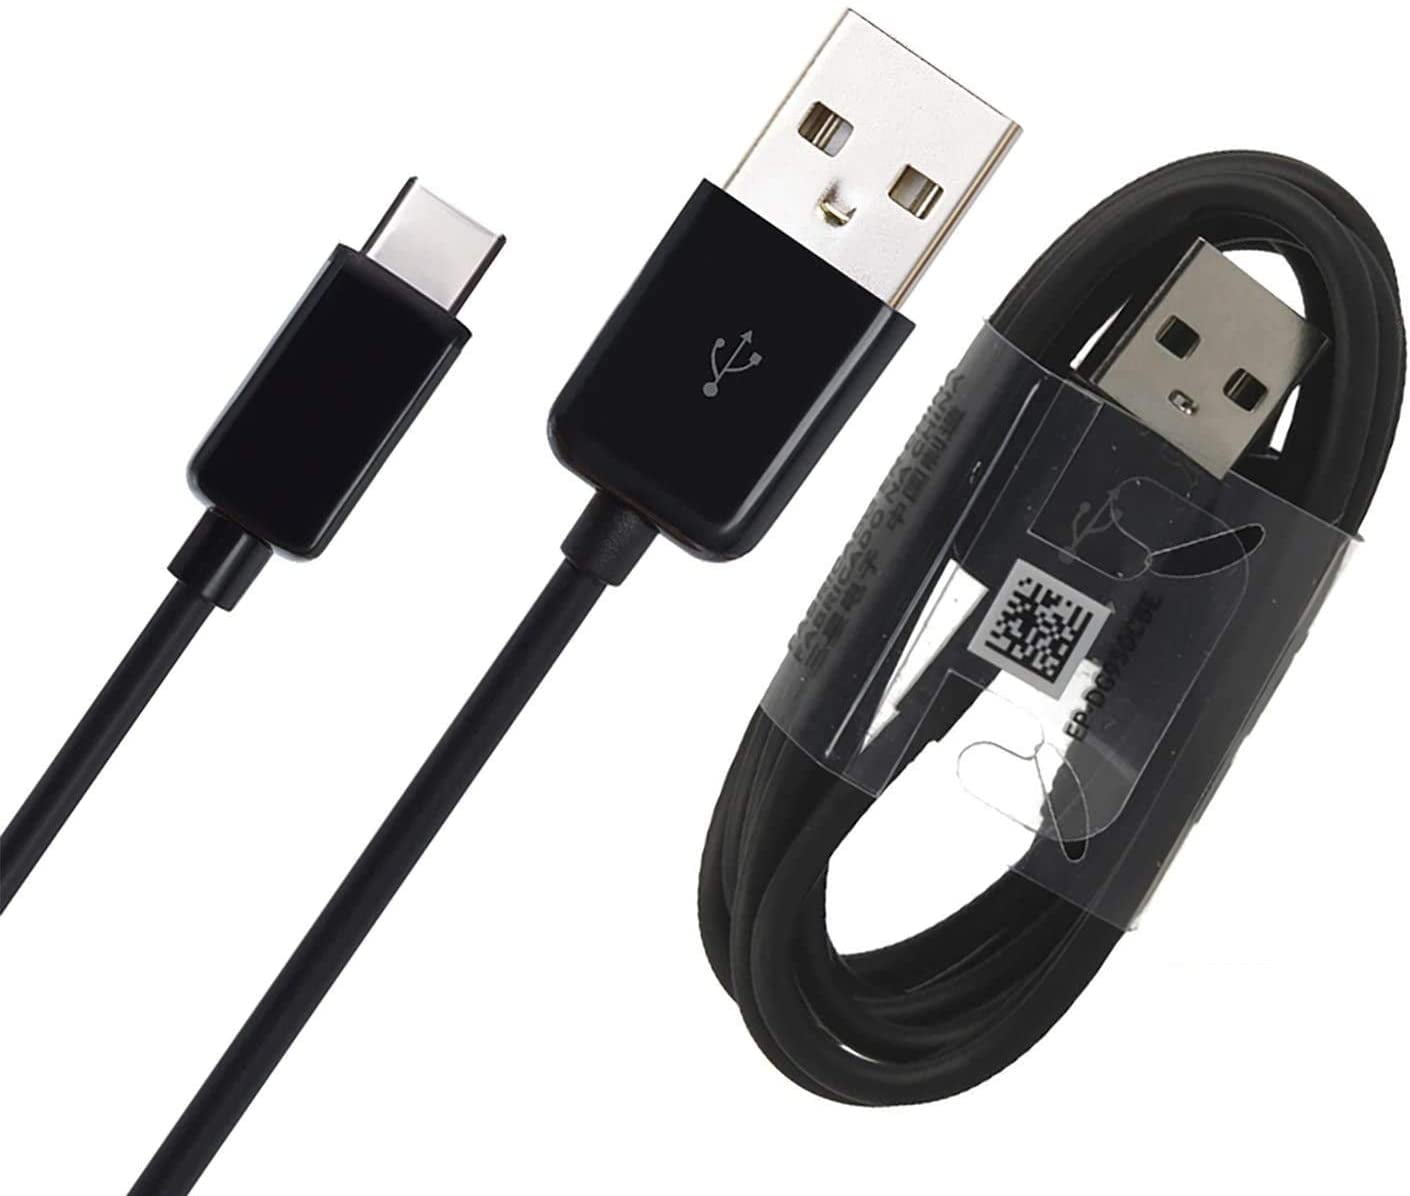 Cable USB-C + Chargeur Secteur Noir pour Samsung Galaxy S10 / S10+